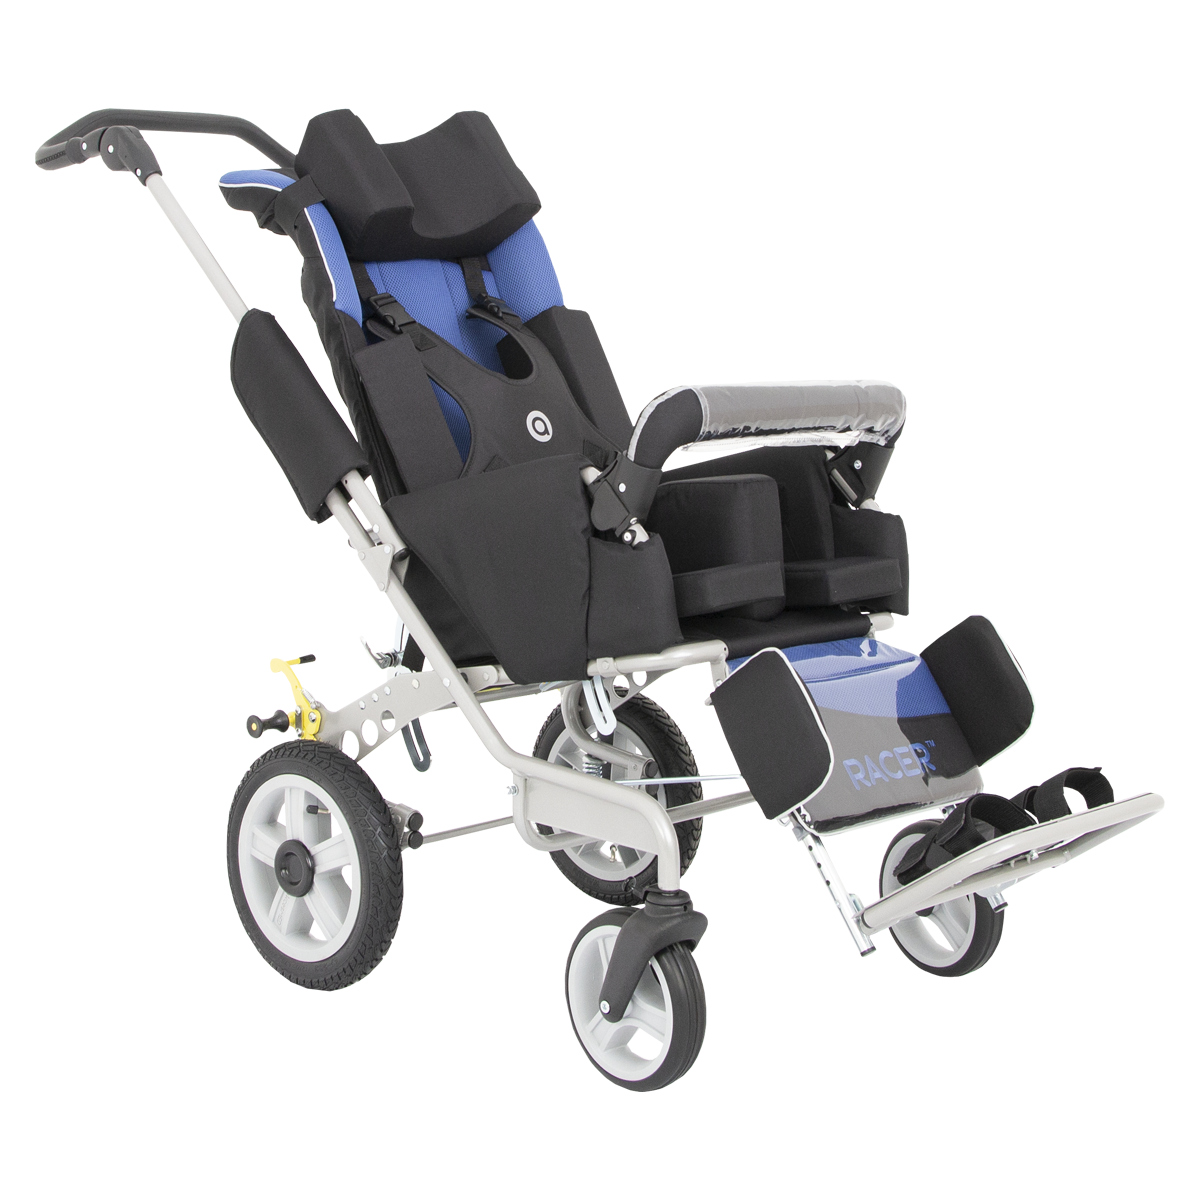 Кресло коляска для инвалида ребенка прогулочная. Коляска рейсер 4 для детей с ДЦП. Коляска рейсер 2 для детей с ДЦП. Кресло-коляска для детей с ДЦП Akces-med рейсер-2. Кресло-коляска для детей с ДЦП Akces-med рейсер+ -3.